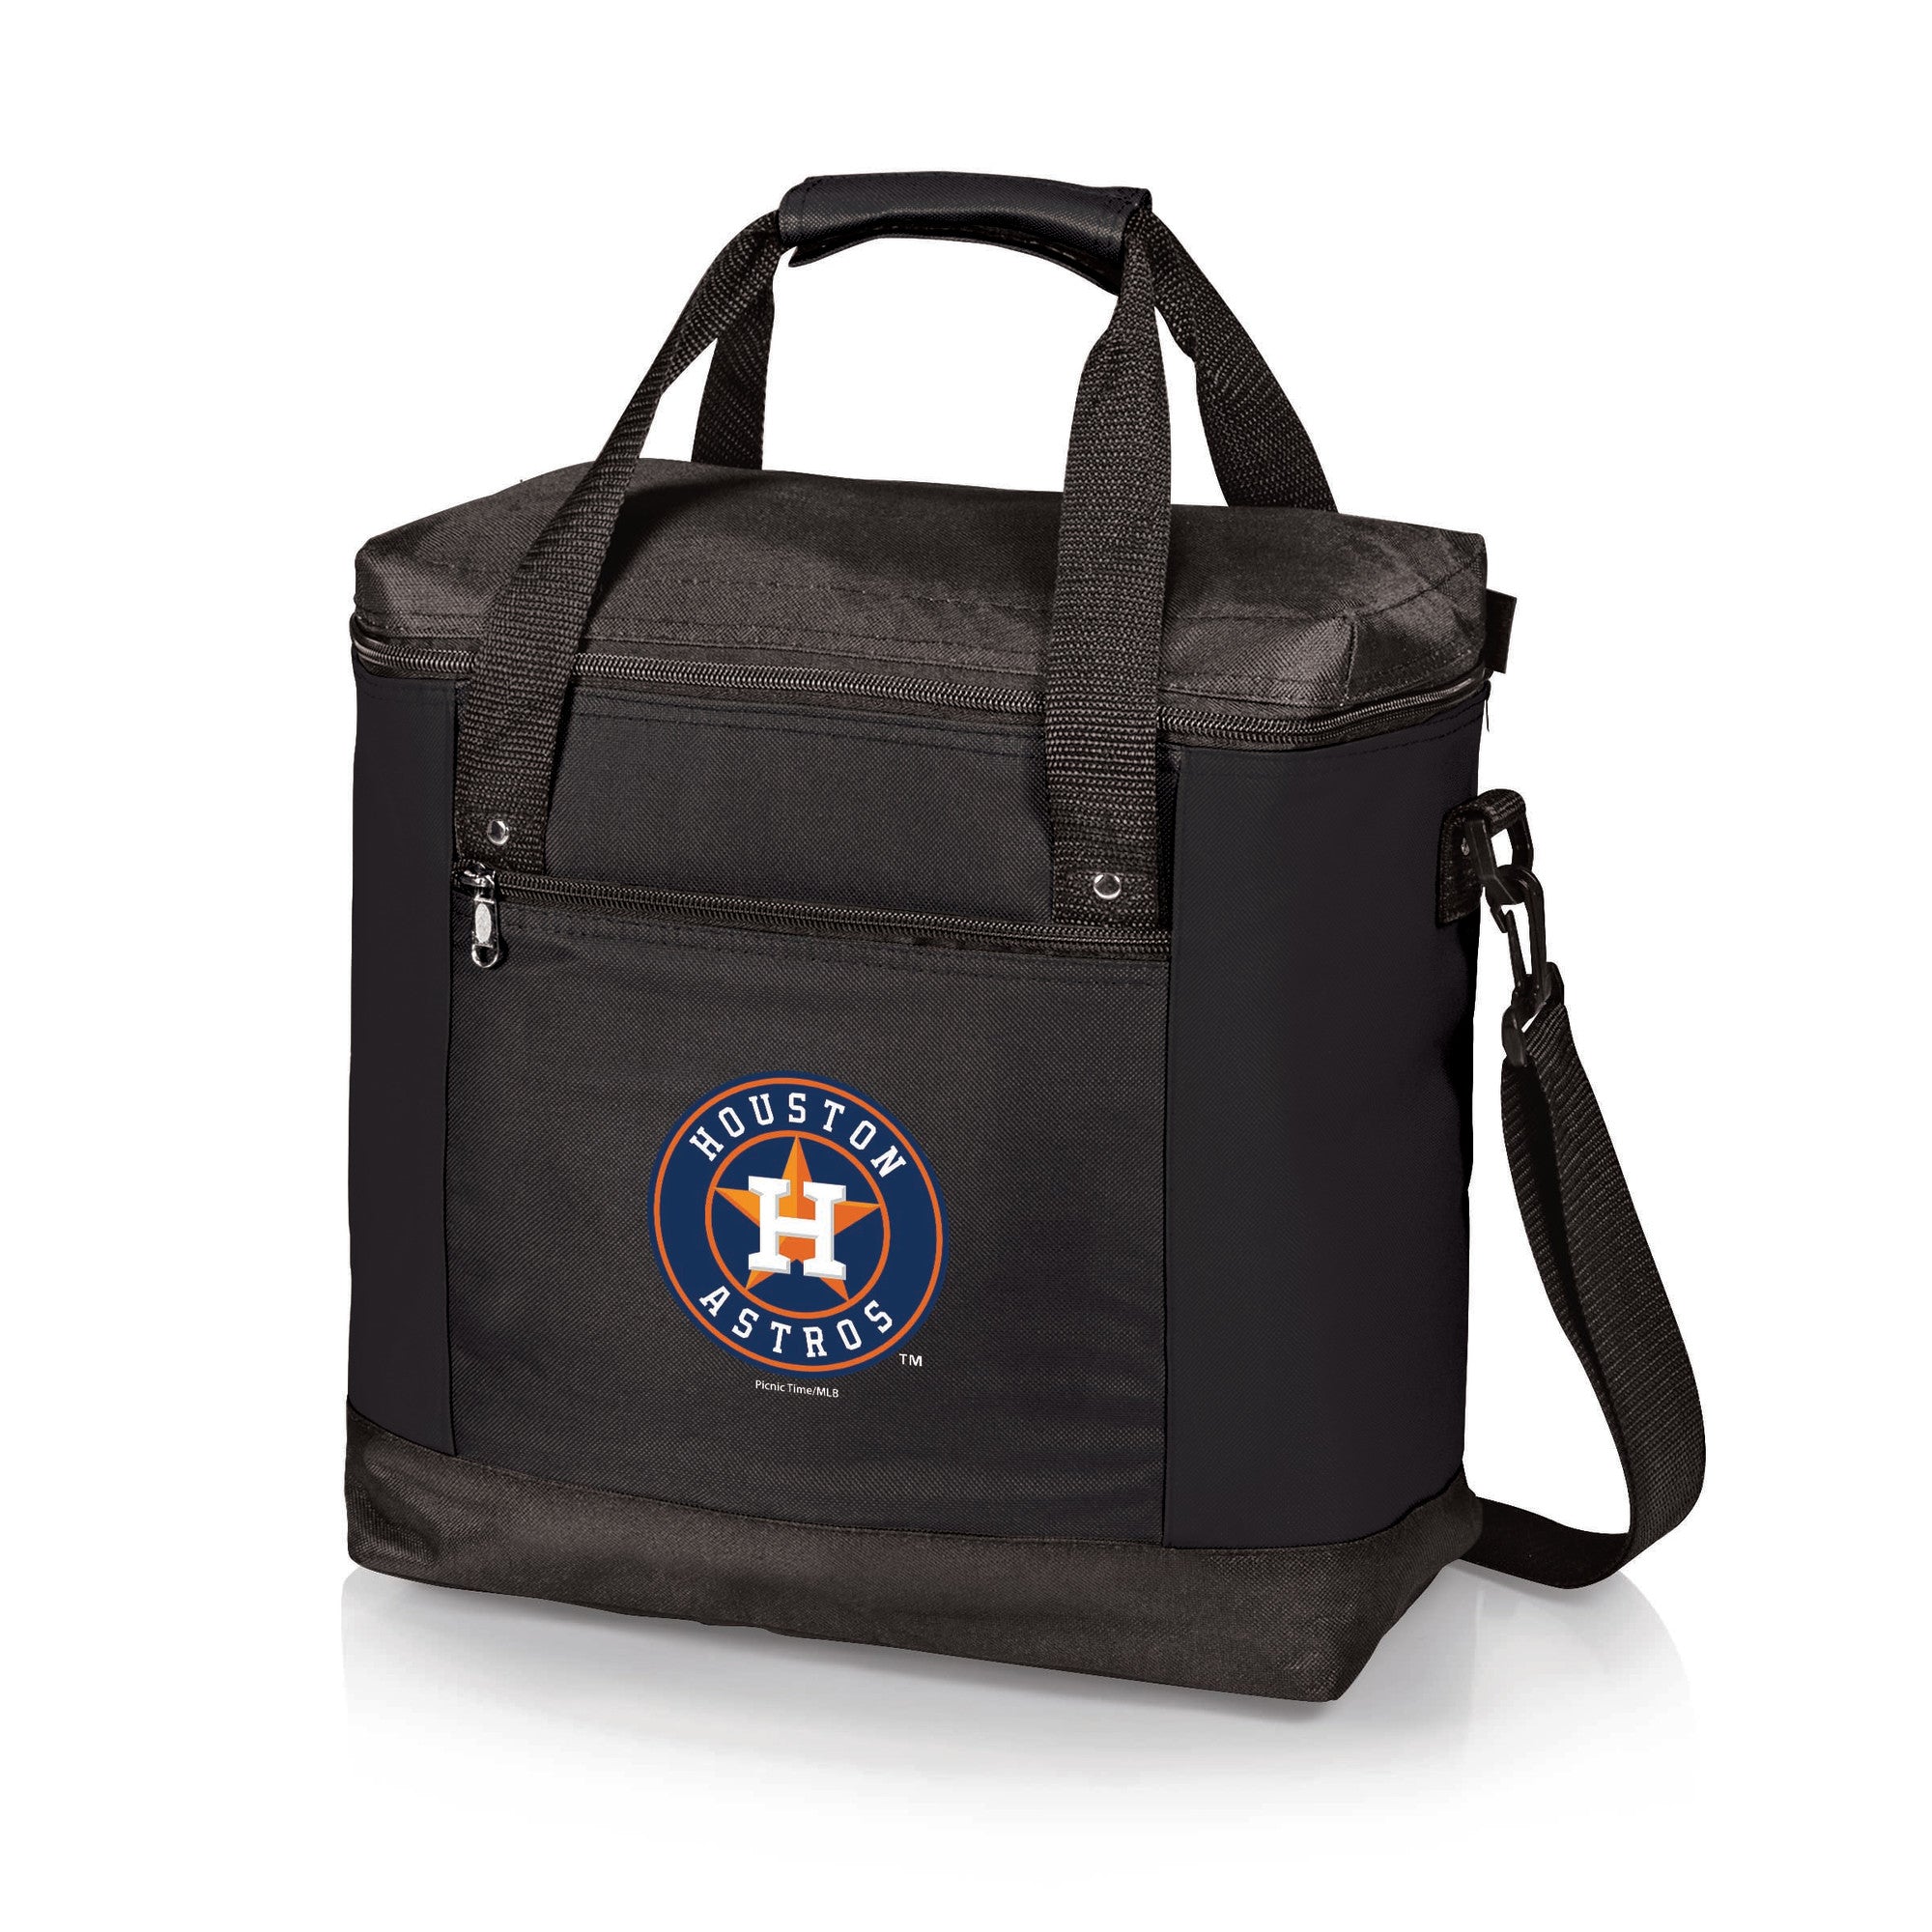 Houston Astros - Montero Cooler Tote Bag